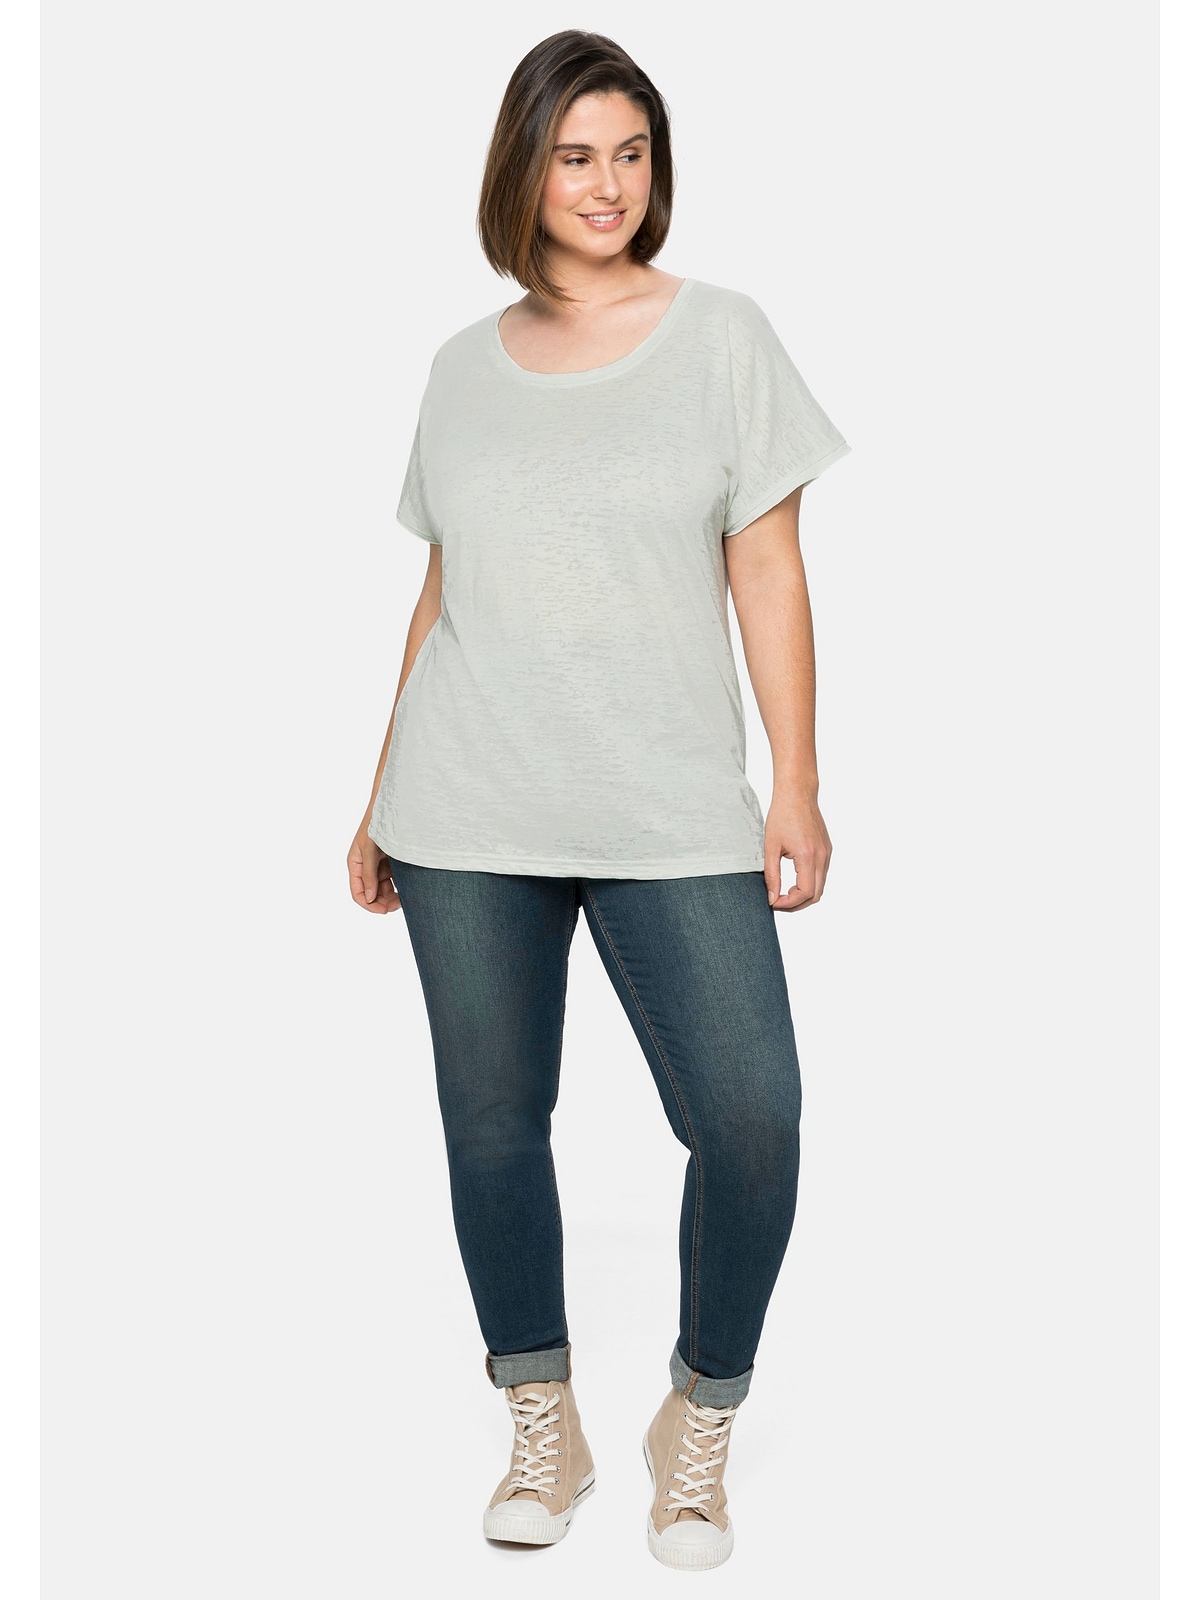 walking T-Shirt | kaufen mit Sheego »Große Größen«, Ausbrennermuster, I\'m transparent leicht